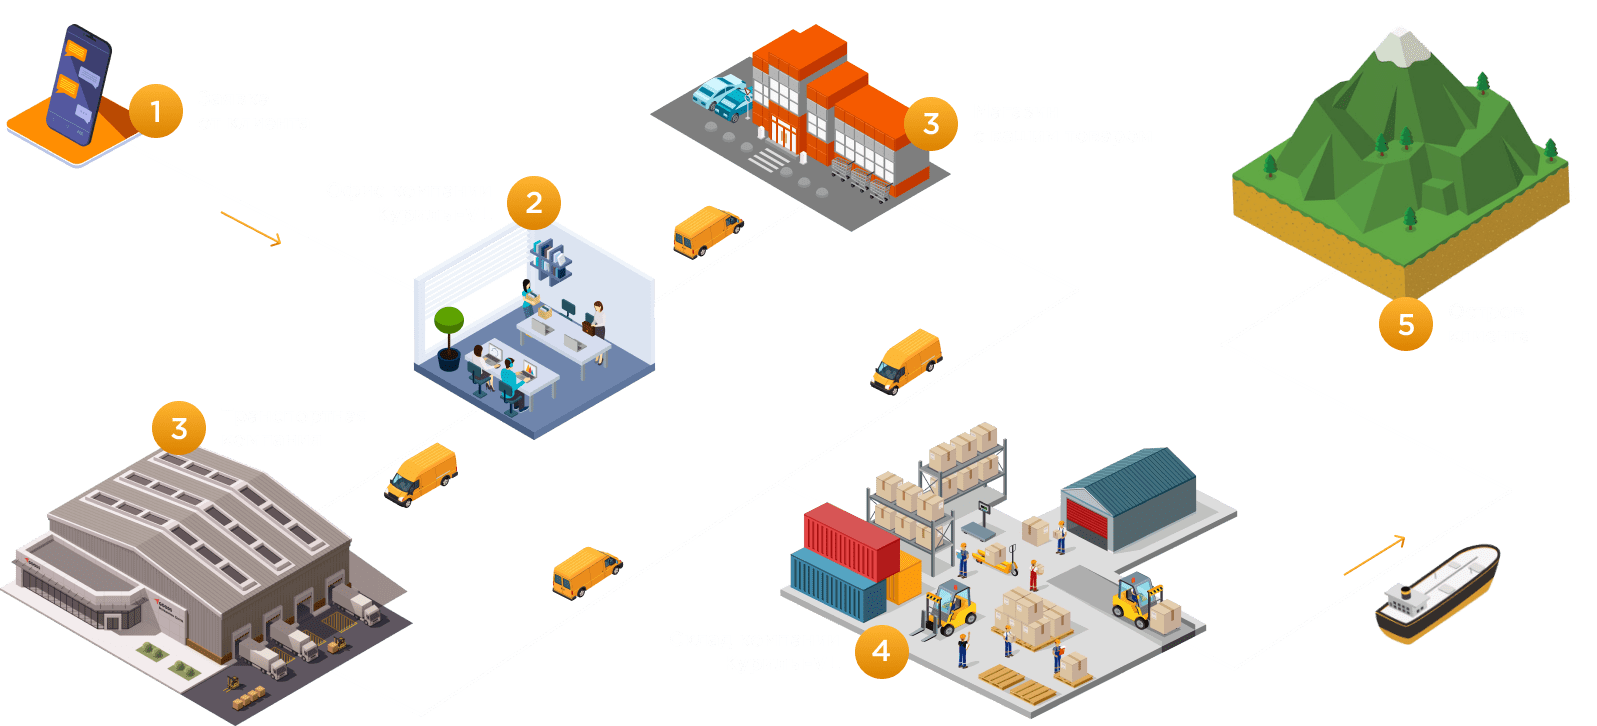 Схема этапов сотрудничества компании Курилы-VL